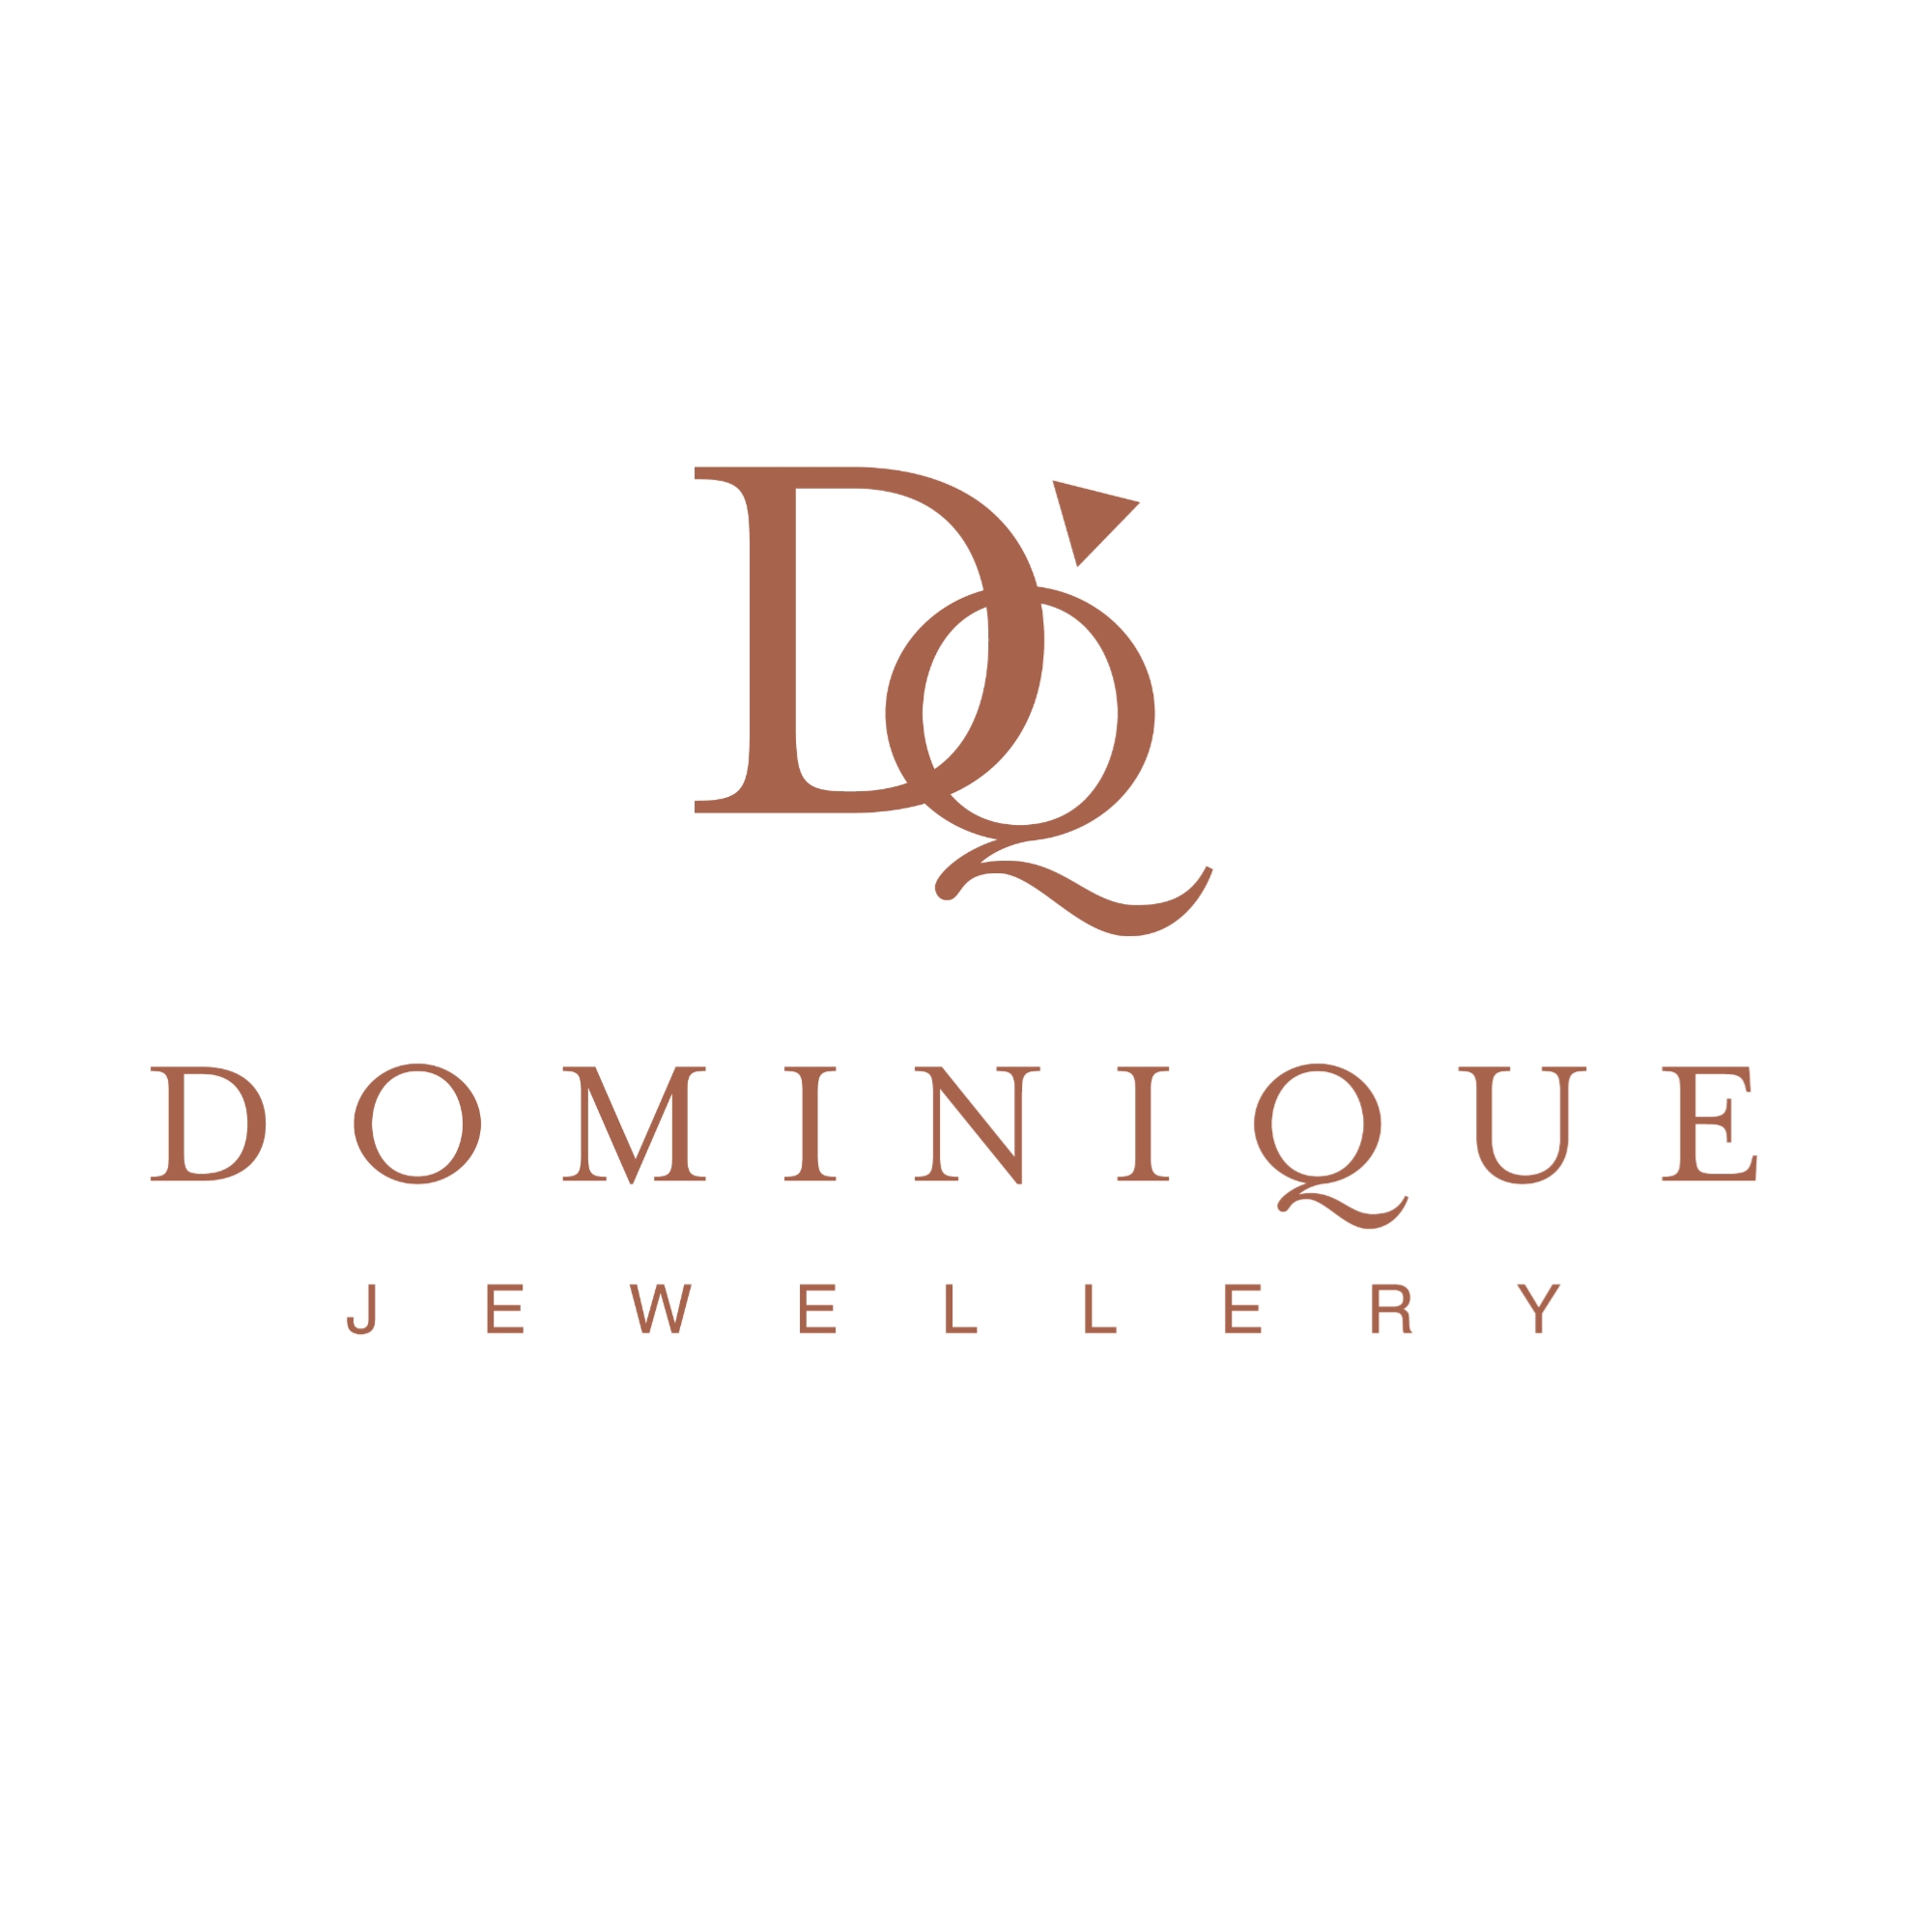 Dominique Jewellery